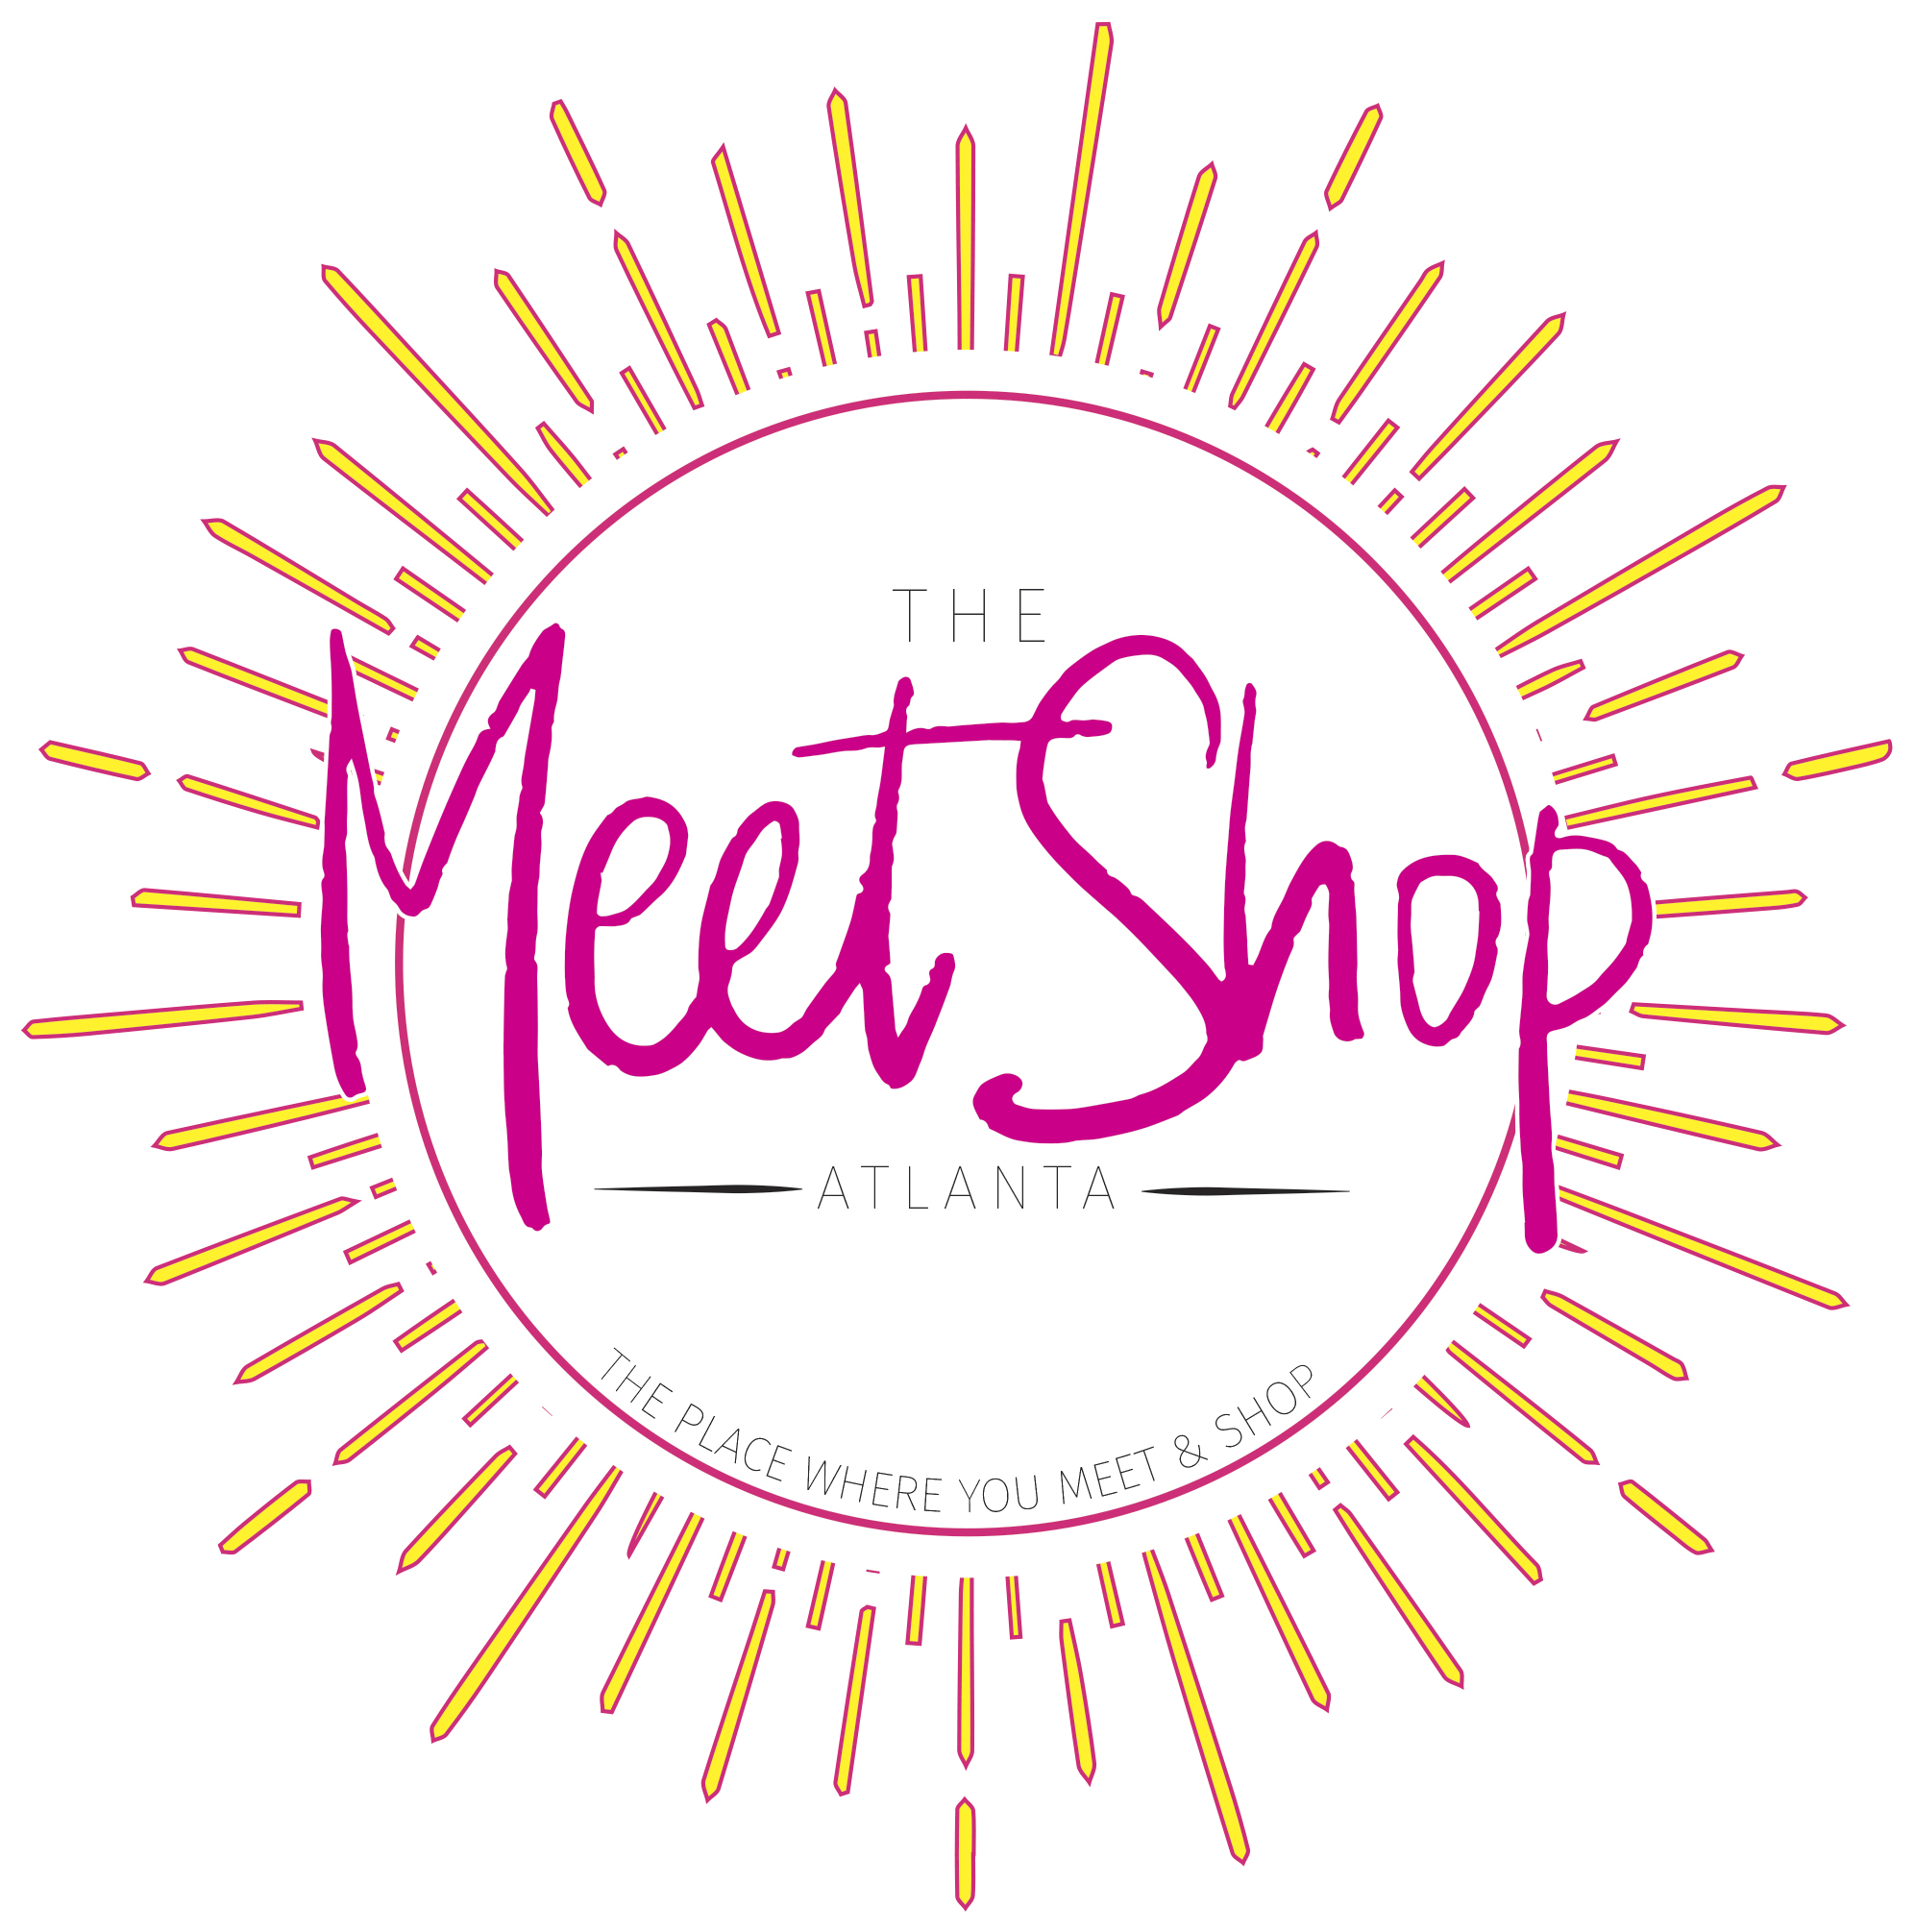 The Meet Shop